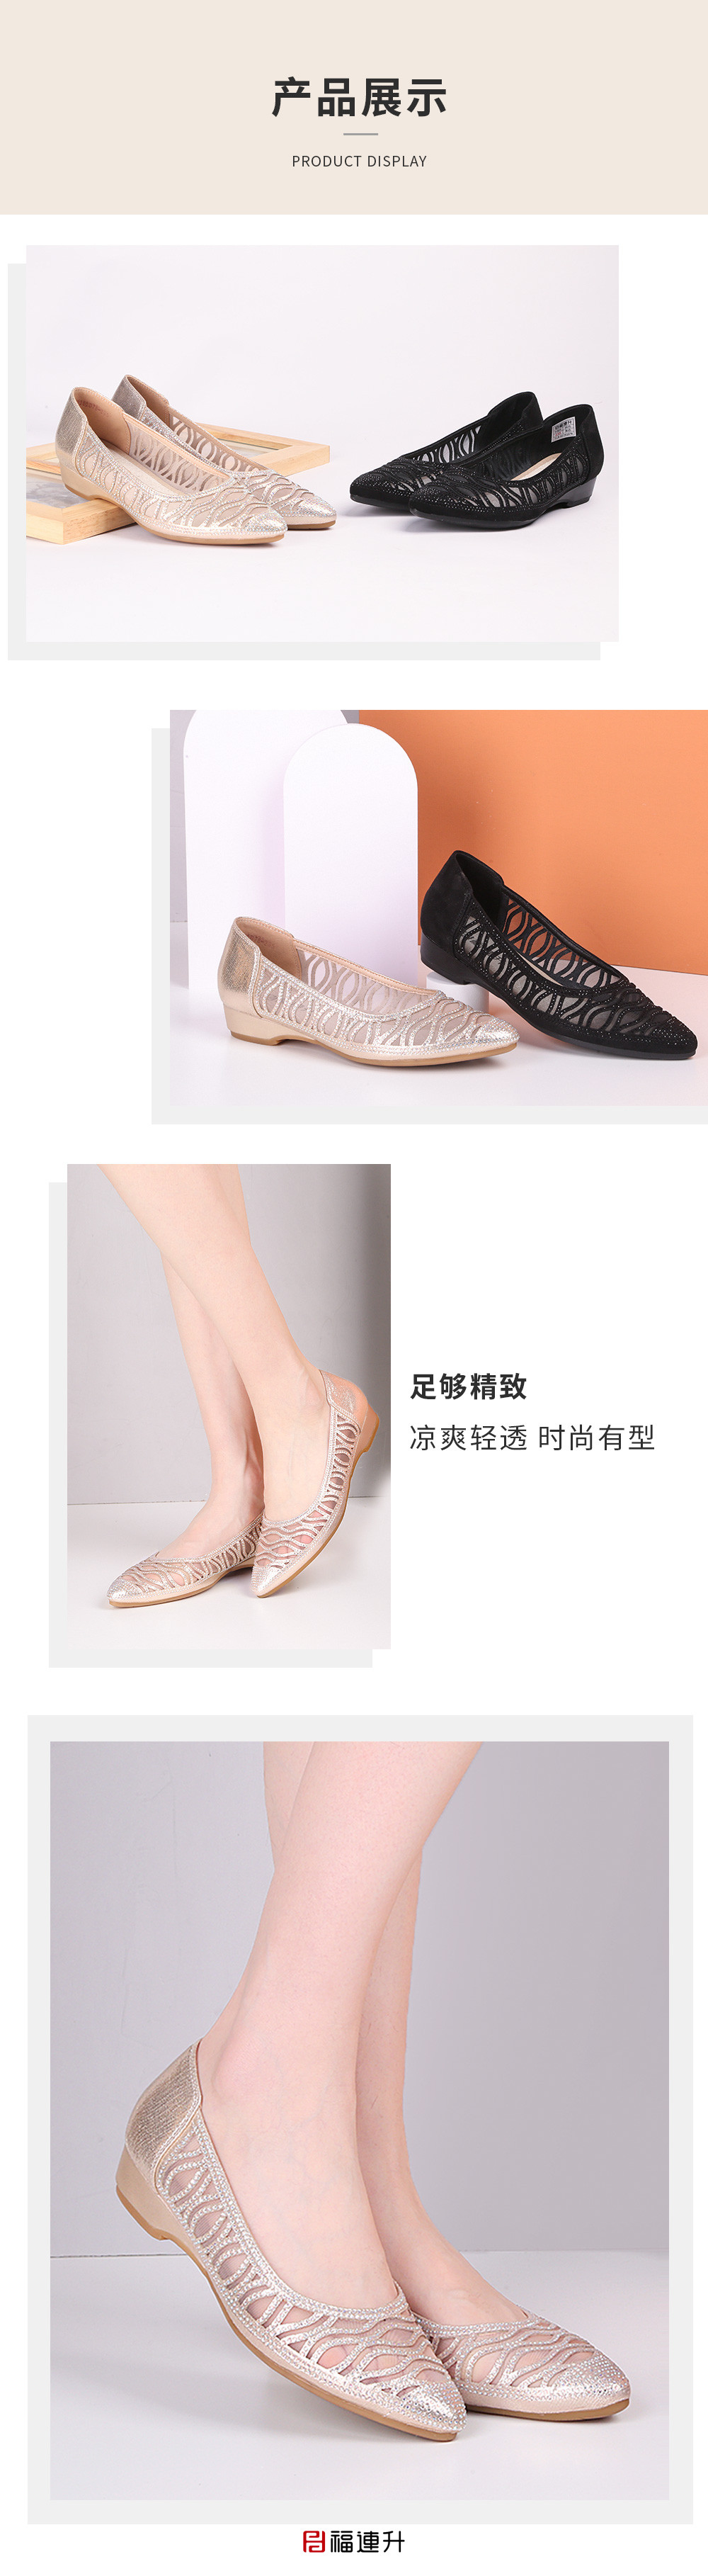 福连升夏时尚透气网孔低跟老北京布鞋女士凉鞋(图7)